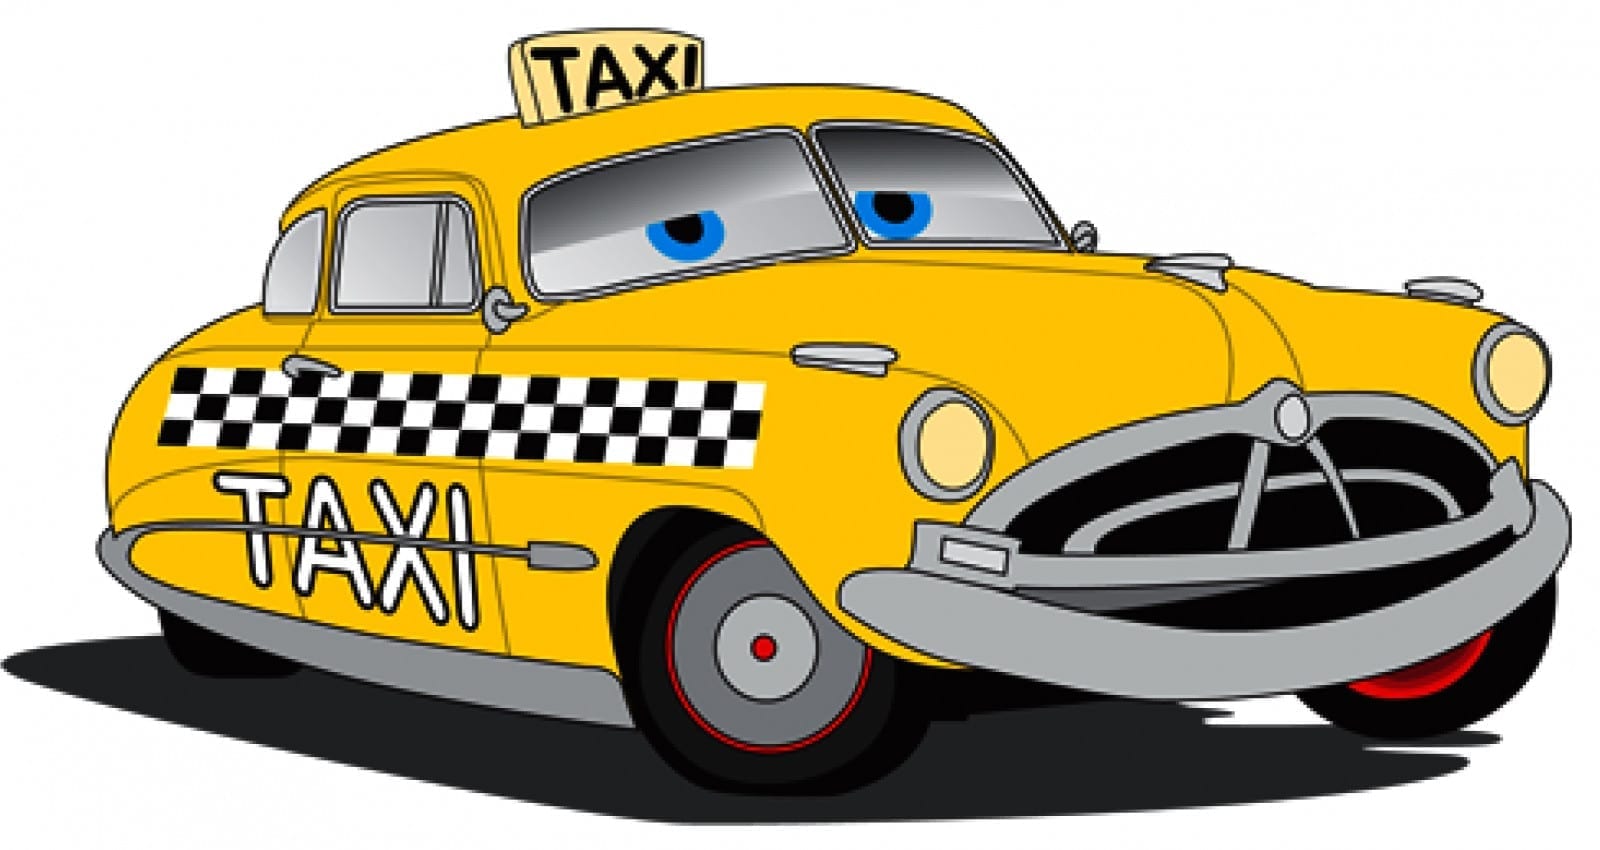 ДТП с такси в Днепре: как пассажиру получить компенсацию